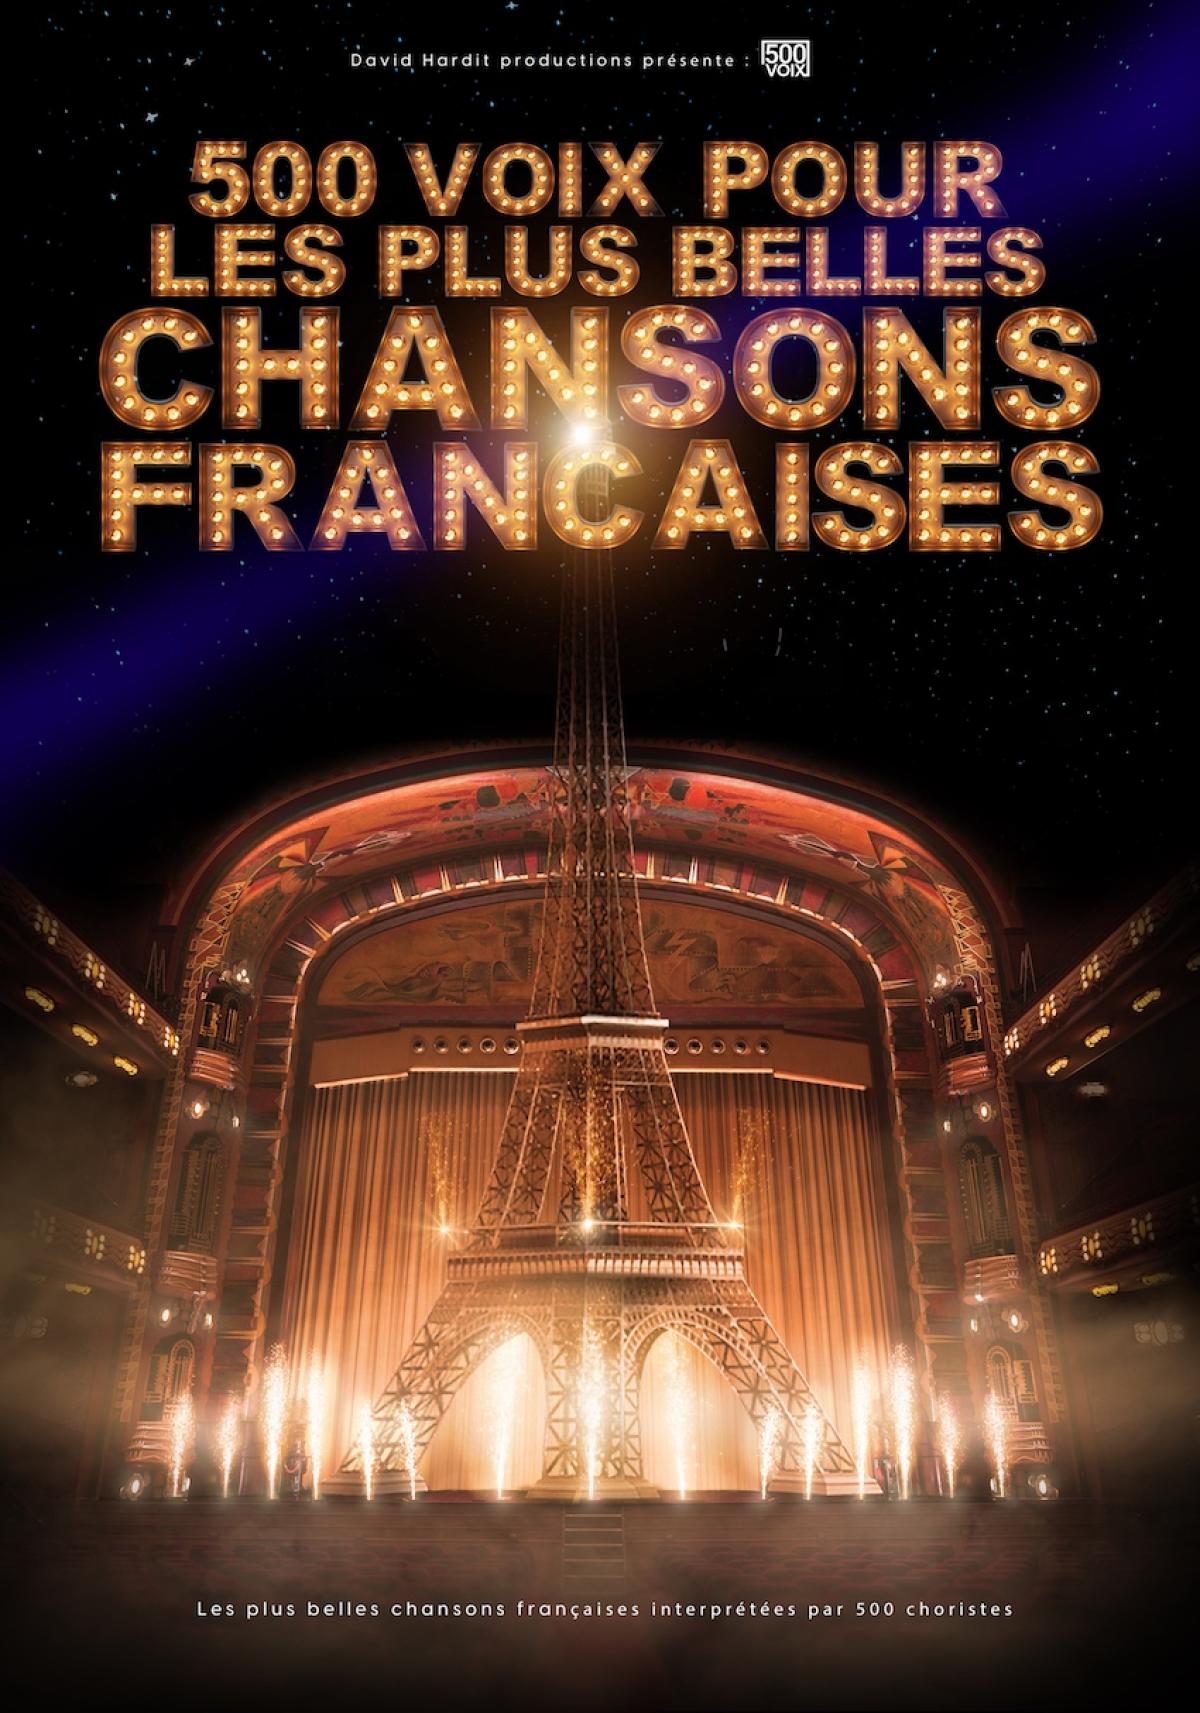 500 Voix Pour Les Plus Belles Chansons in der Glaz Arena Tickets